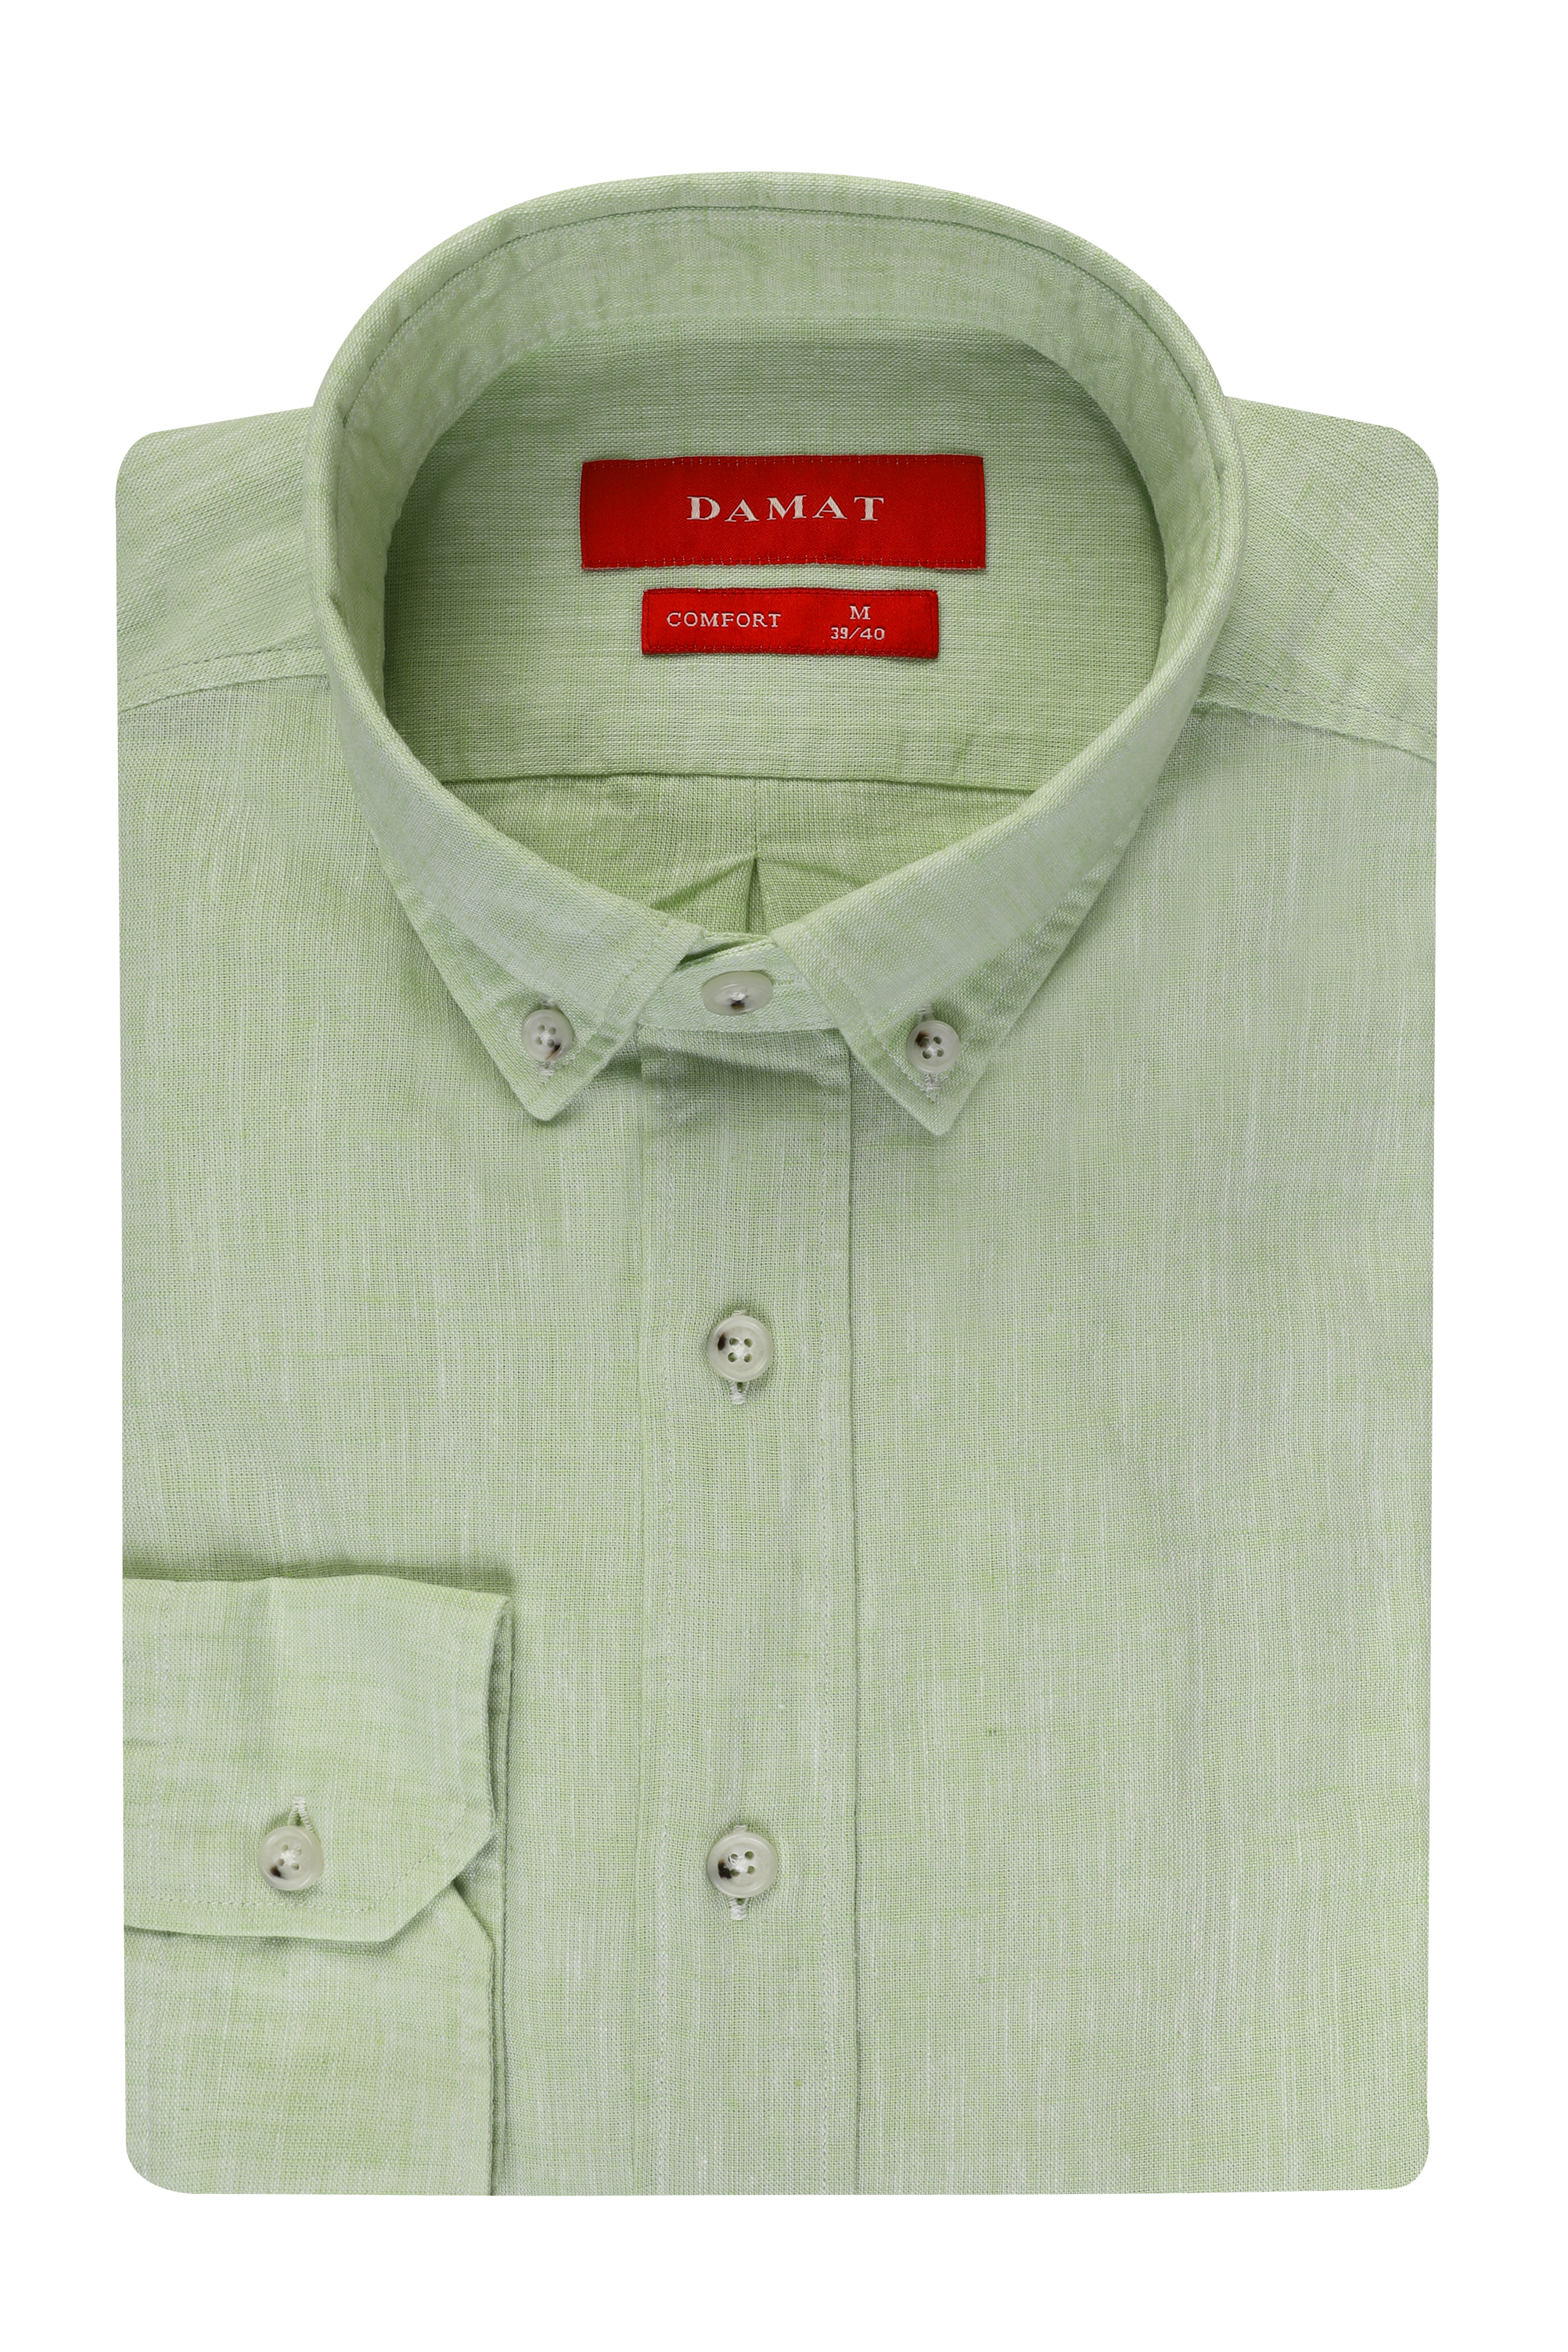 Damat Tween Damat Comfort Yeşil Düz Gömlek. 1